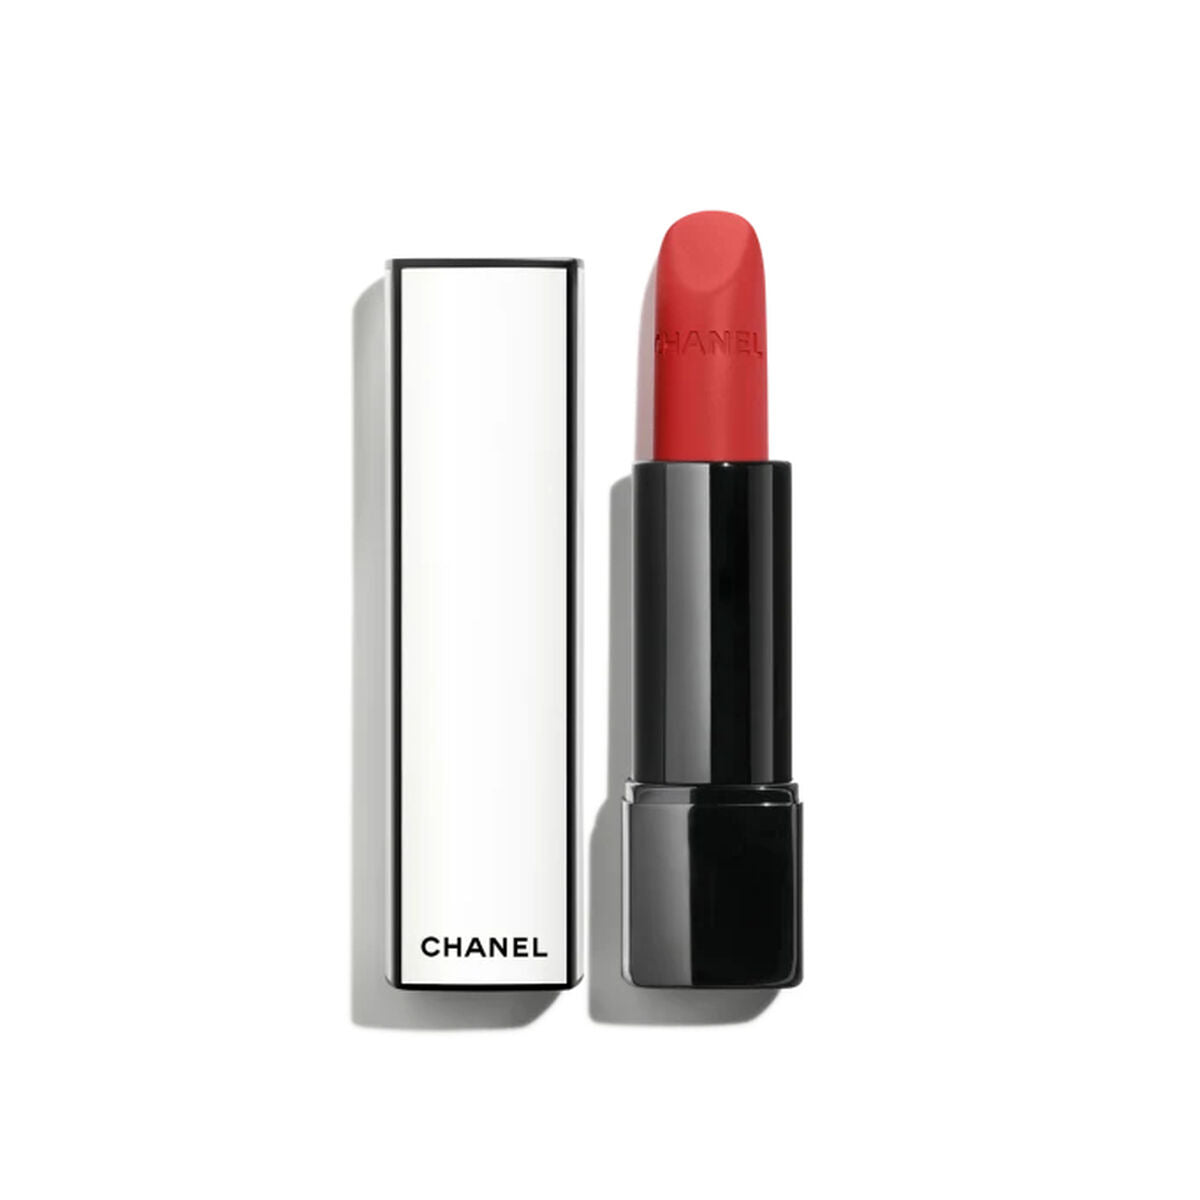 Kaufe Lippenstift Chanel Rouge Allure Velvet Nº 02:00 3,5 g bei AWK Flagship um € 72.00